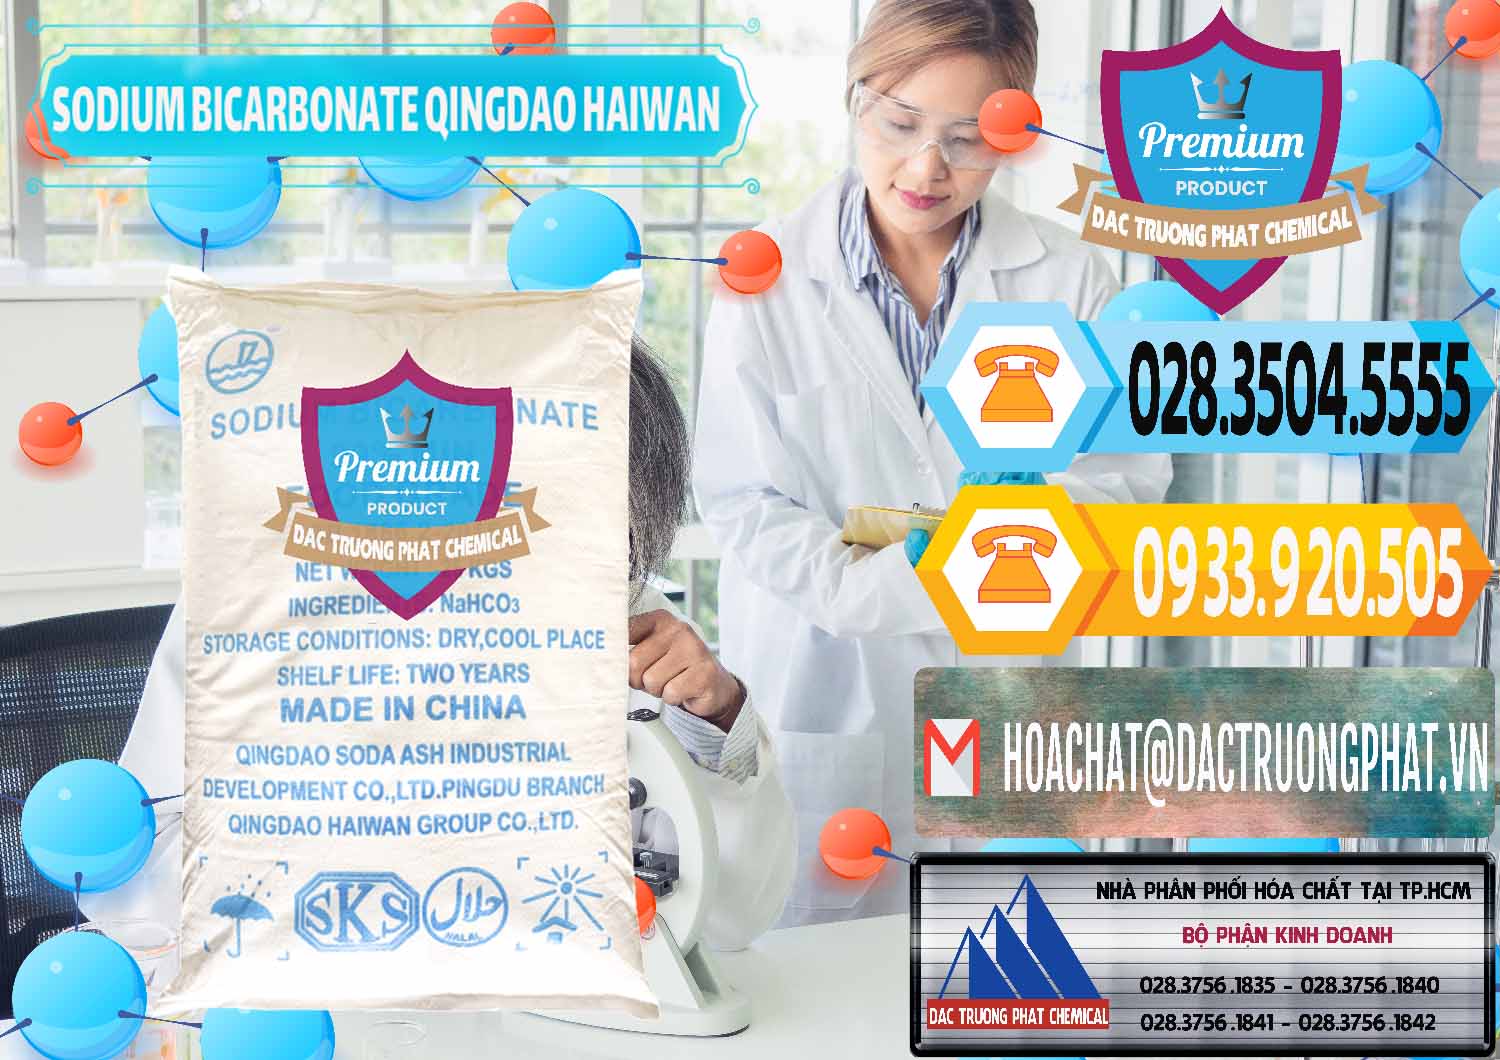 Chuyên phân phối & bán Sodium Bicarbonate – Bicar NaHCO3 Food Grade Qingdao Haiwan Trung Quốc China - 0258 - Công ty chuyên nhập khẩu ( cung cấp ) hóa chất tại TP.HCM - hoachattayrua.net